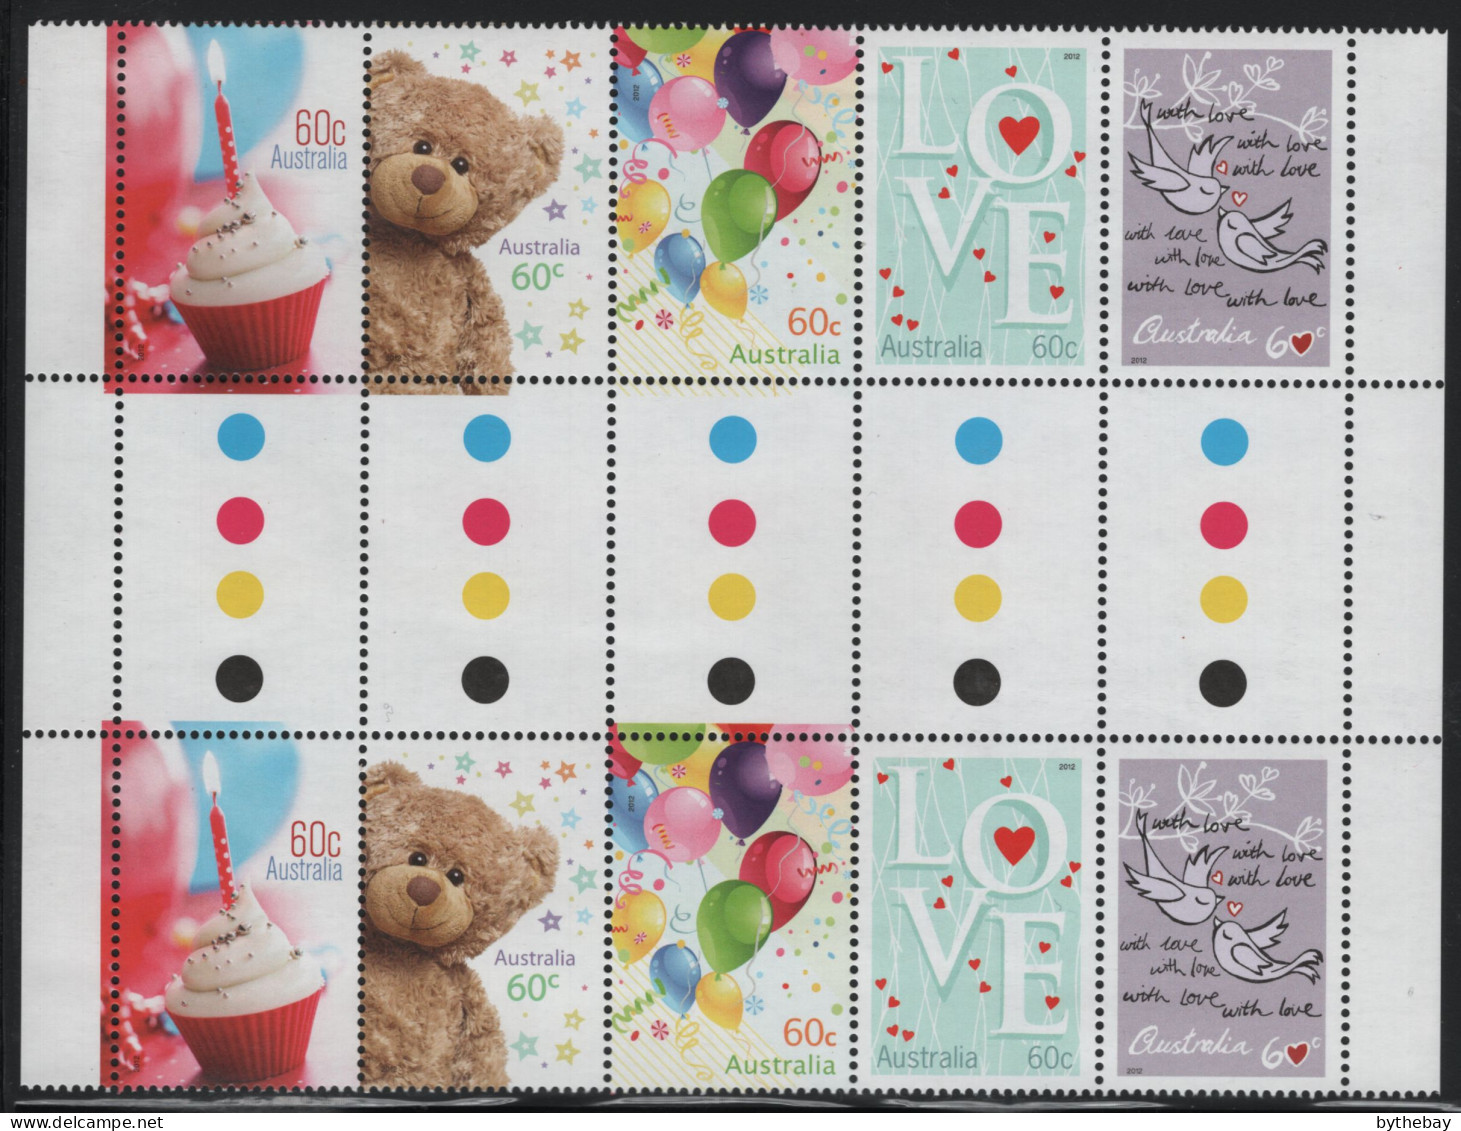 Australia 2012 MNH Sc 3612a 60c Cupcakes, Teddy Bear, Balloons, LOVE, Birds Gutter - Mint Stamps